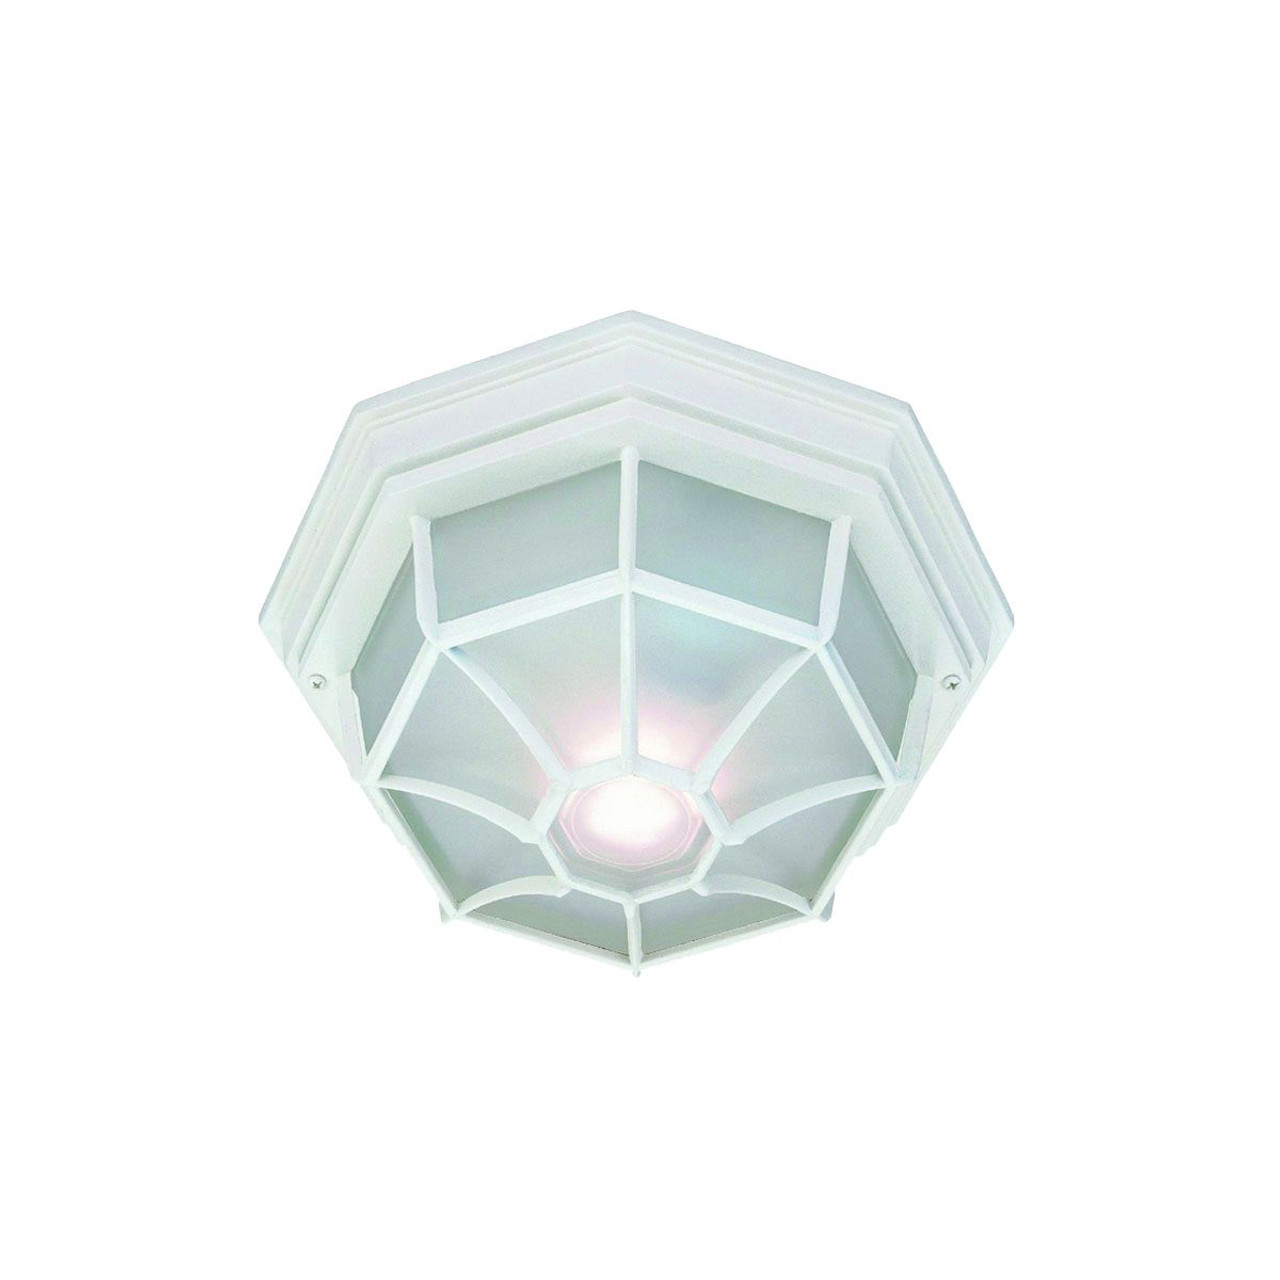 Acclaim Lighting 2-Light Textured White Flushmount Ceiling Light in Textured  White